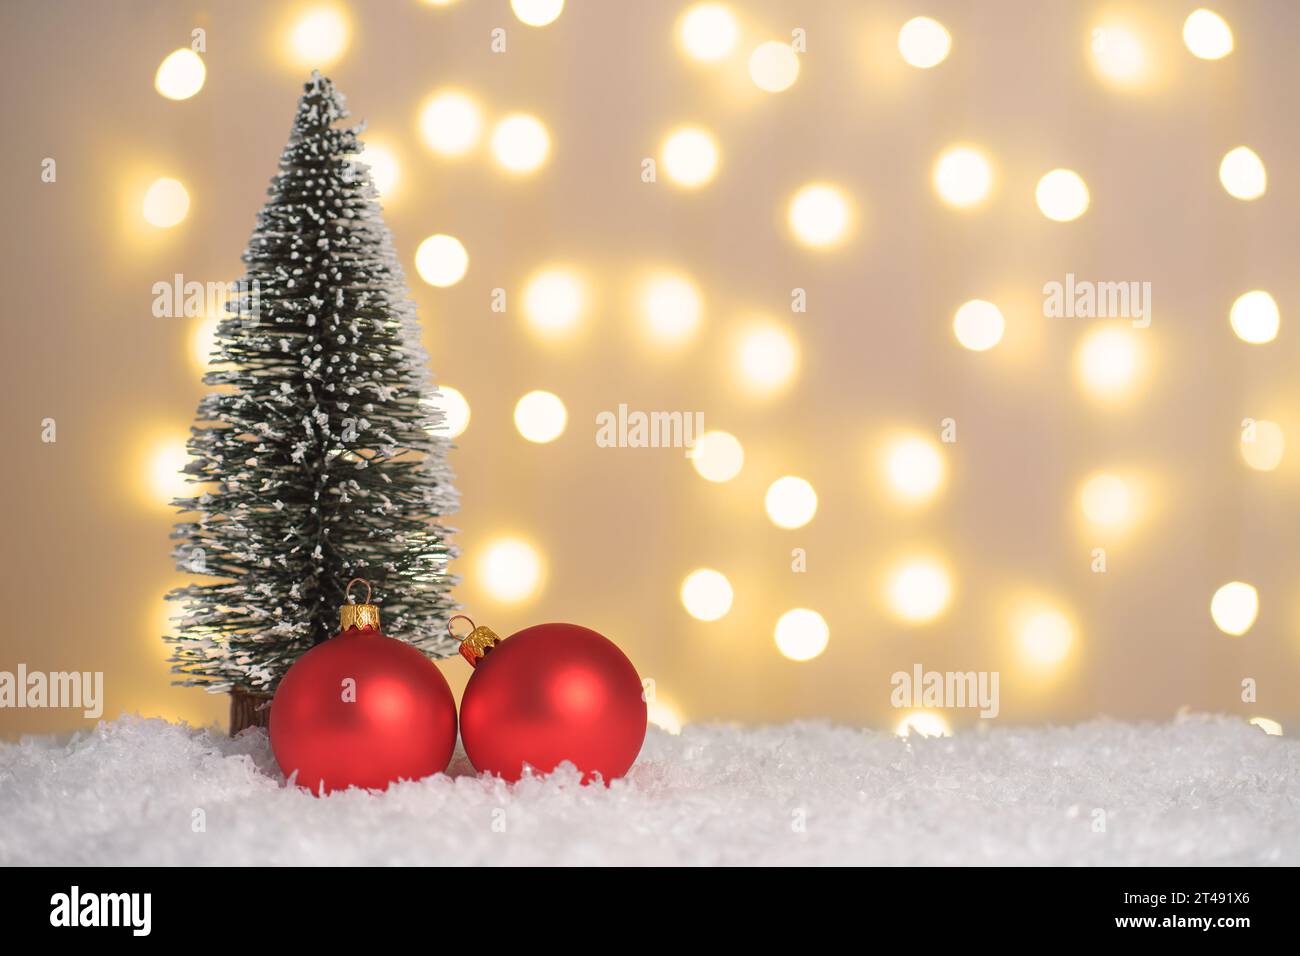 Weihnachtsbaum und zwei rote Kugeln auf Schnee und leuchtenden Lichtern Bokeh Hintergrund. Weihnachten, Neujahr Grußkarte mit Kopierraum. Weihnachtsbeleuchtung, Stockfoto